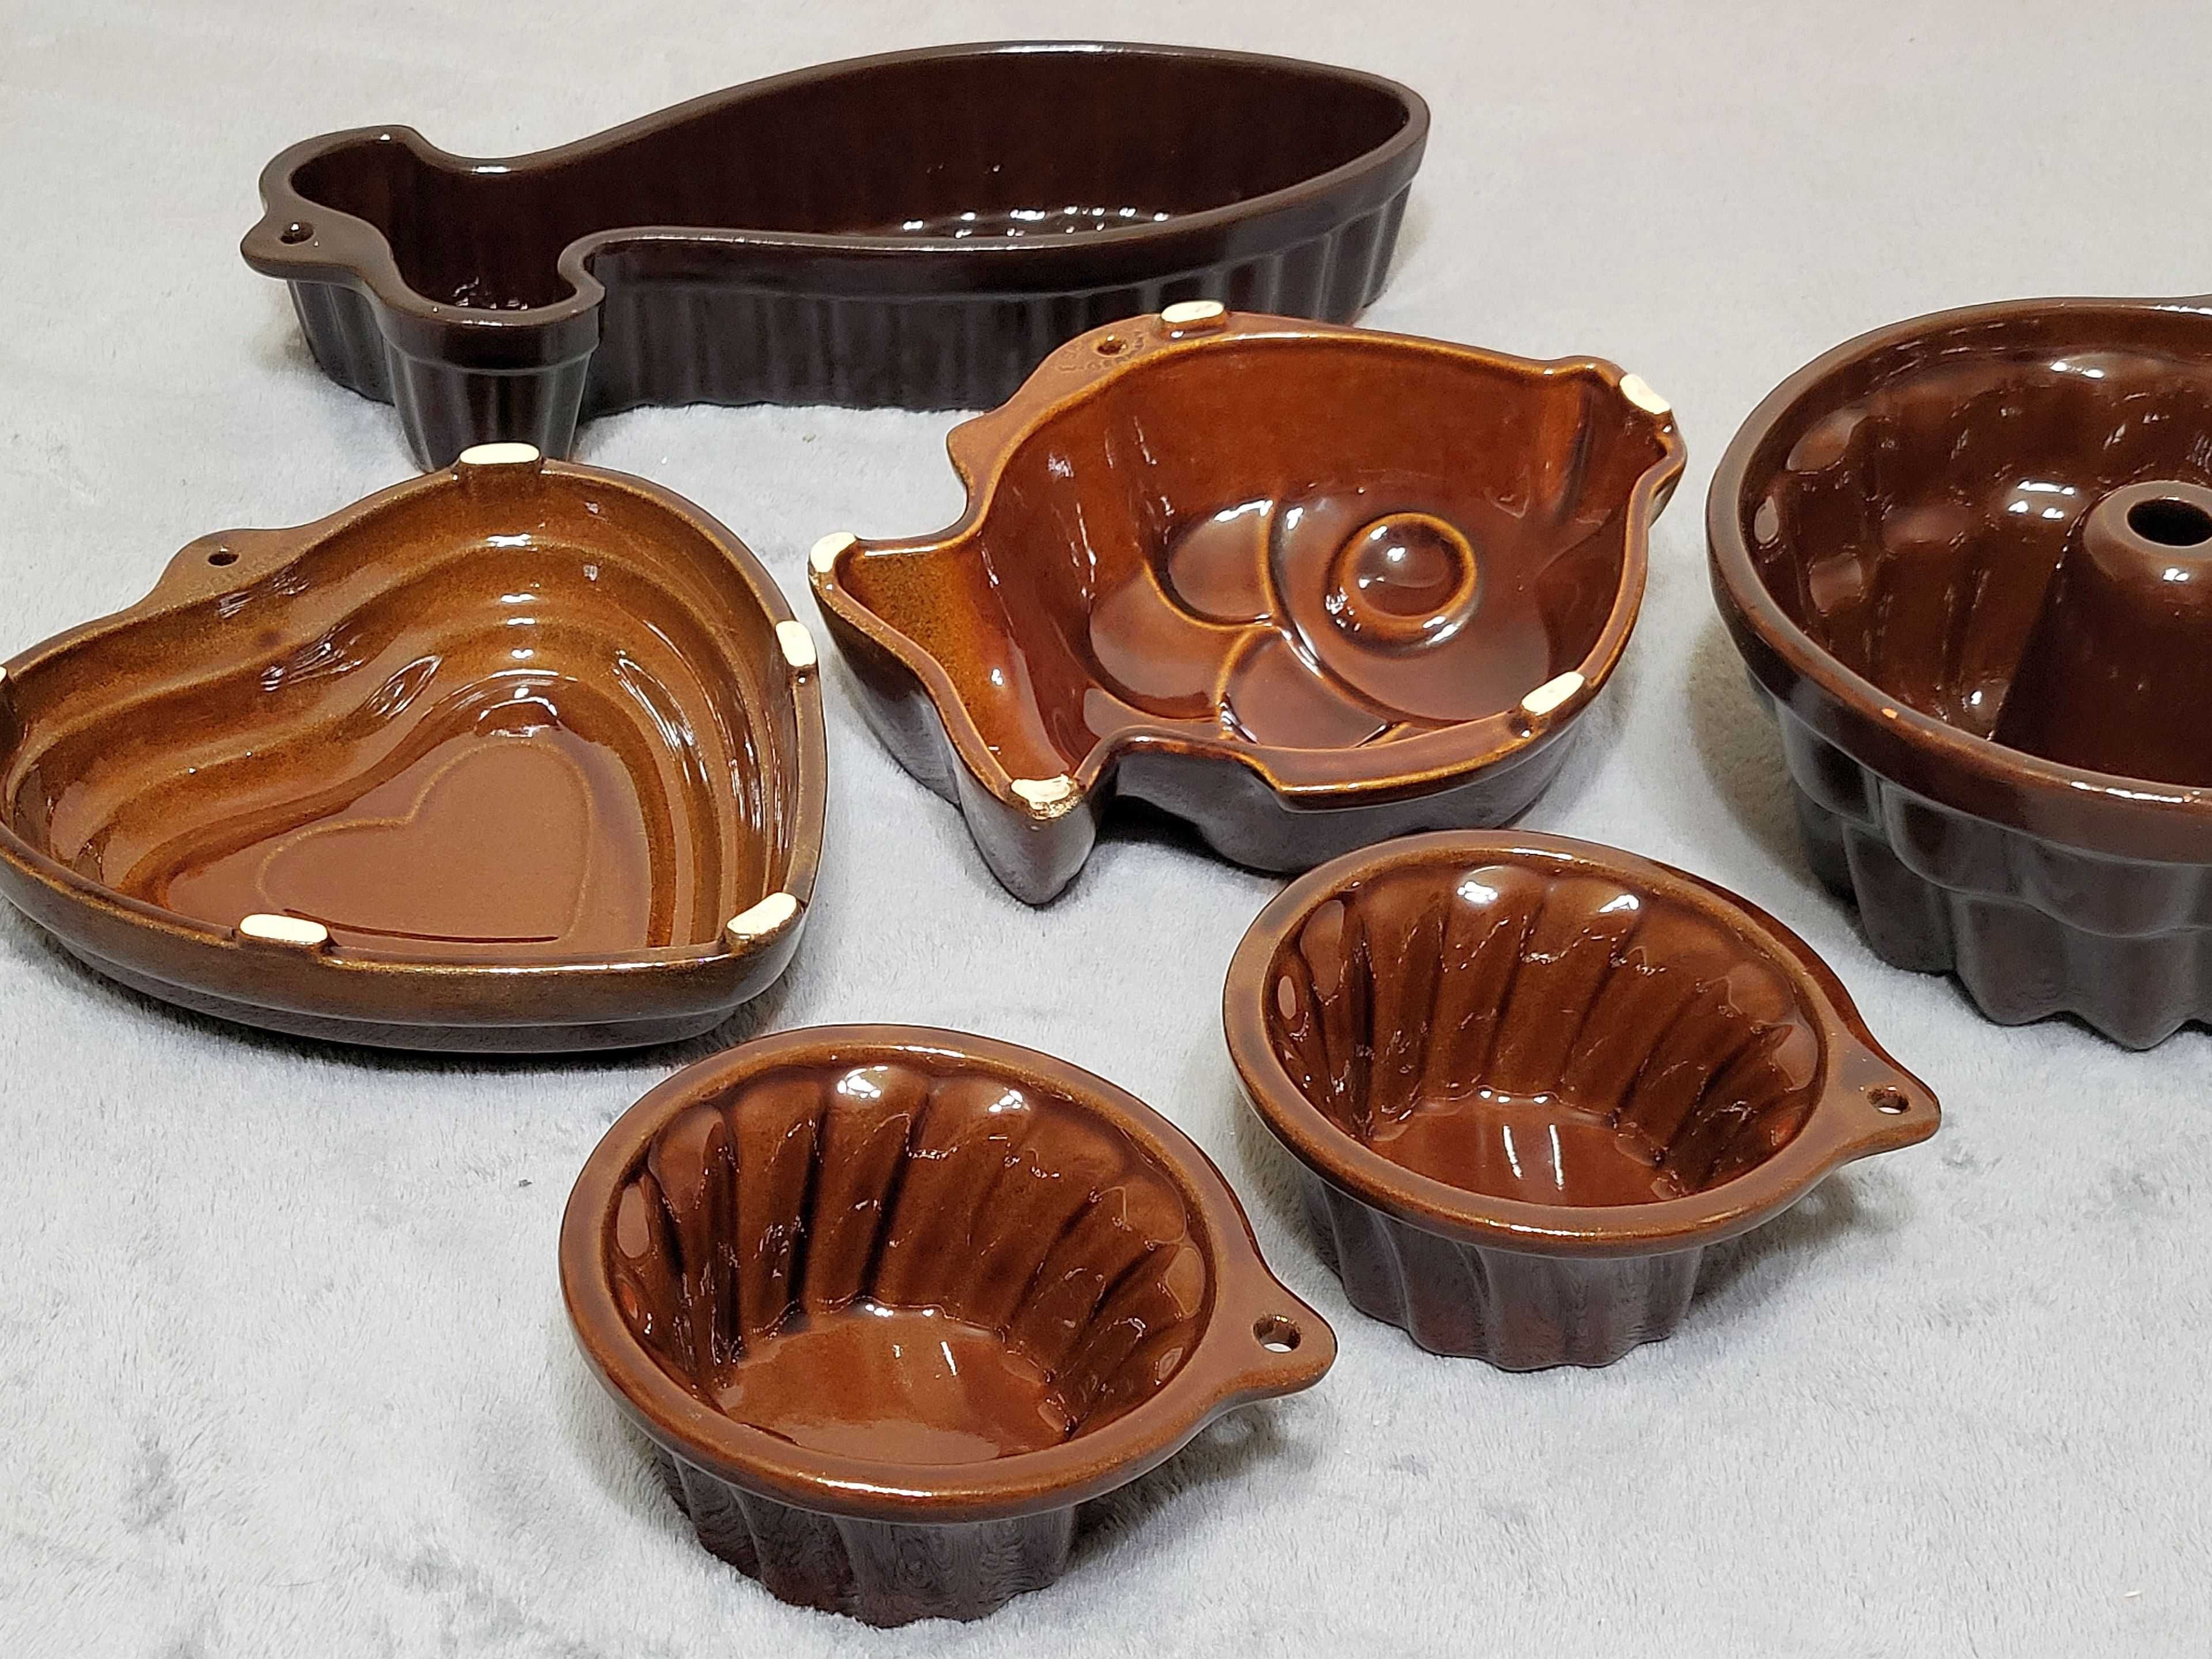 Forma foremka ceramiczna do pieczenia